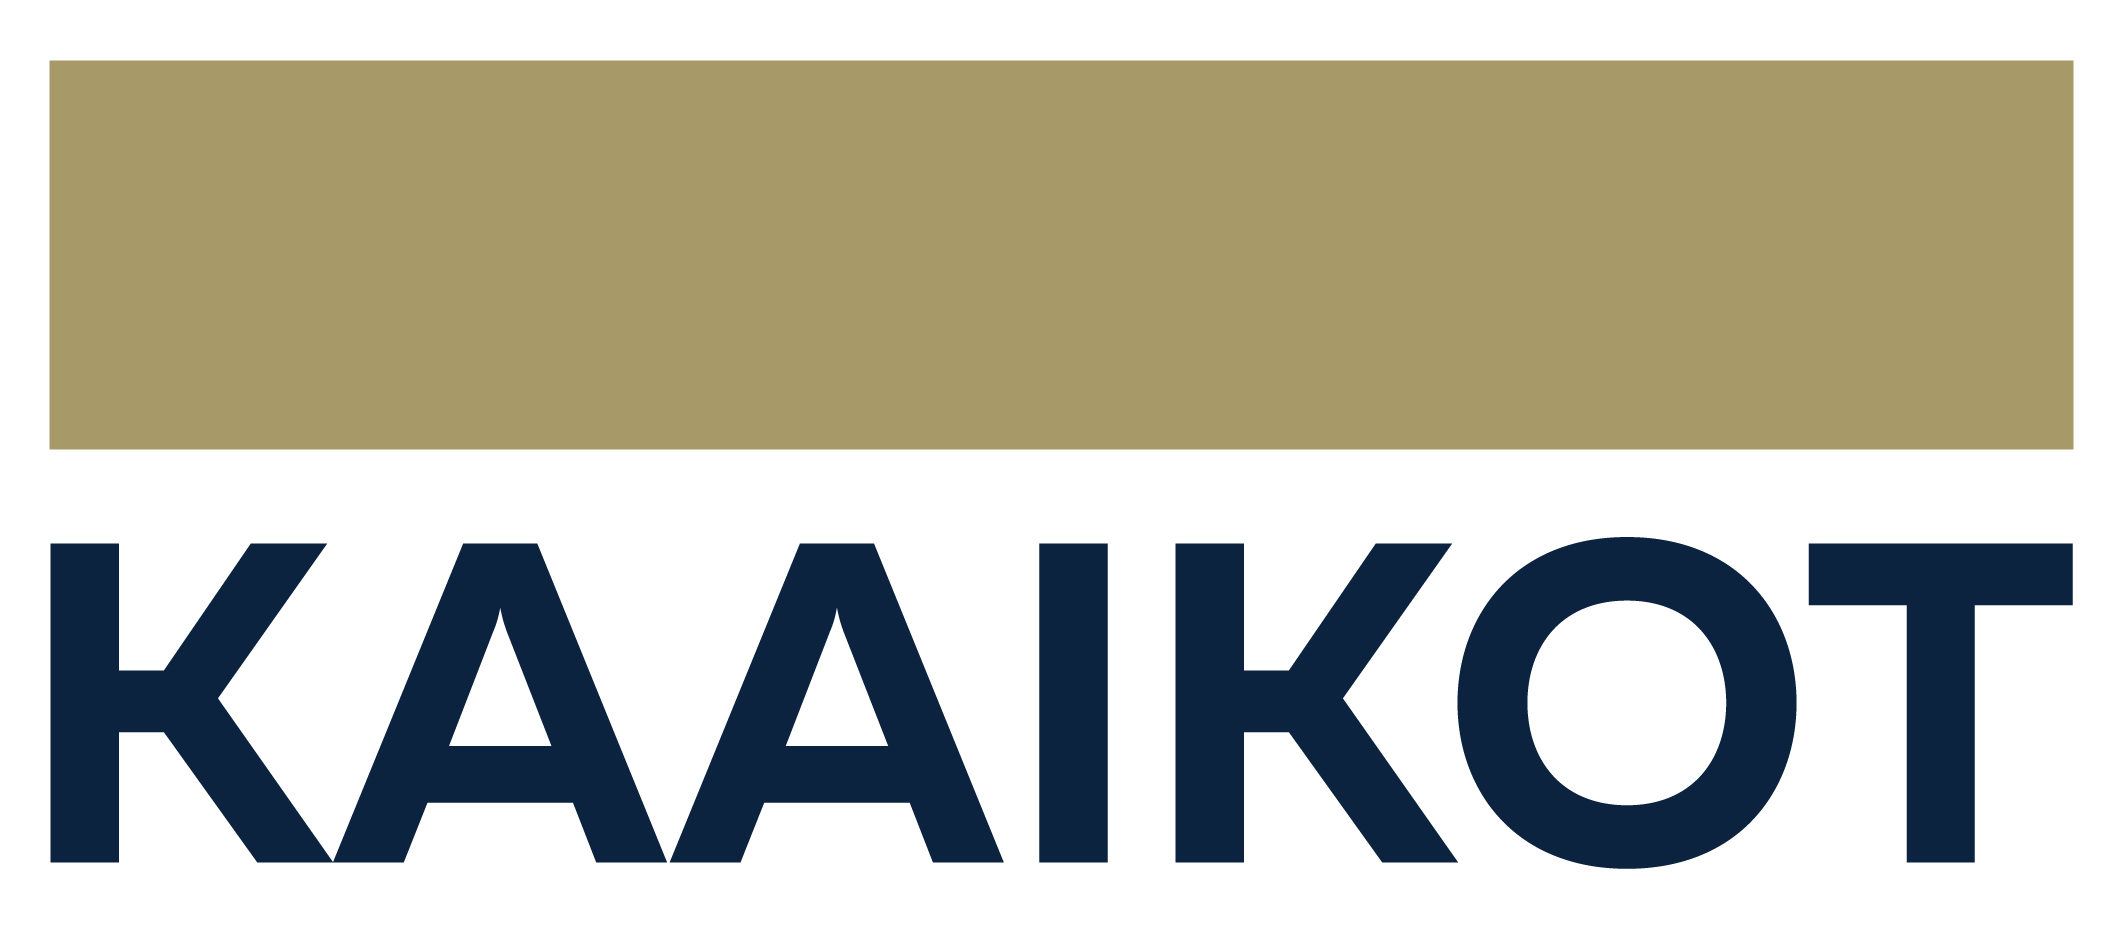 Logo Kaaikot Kortrijk